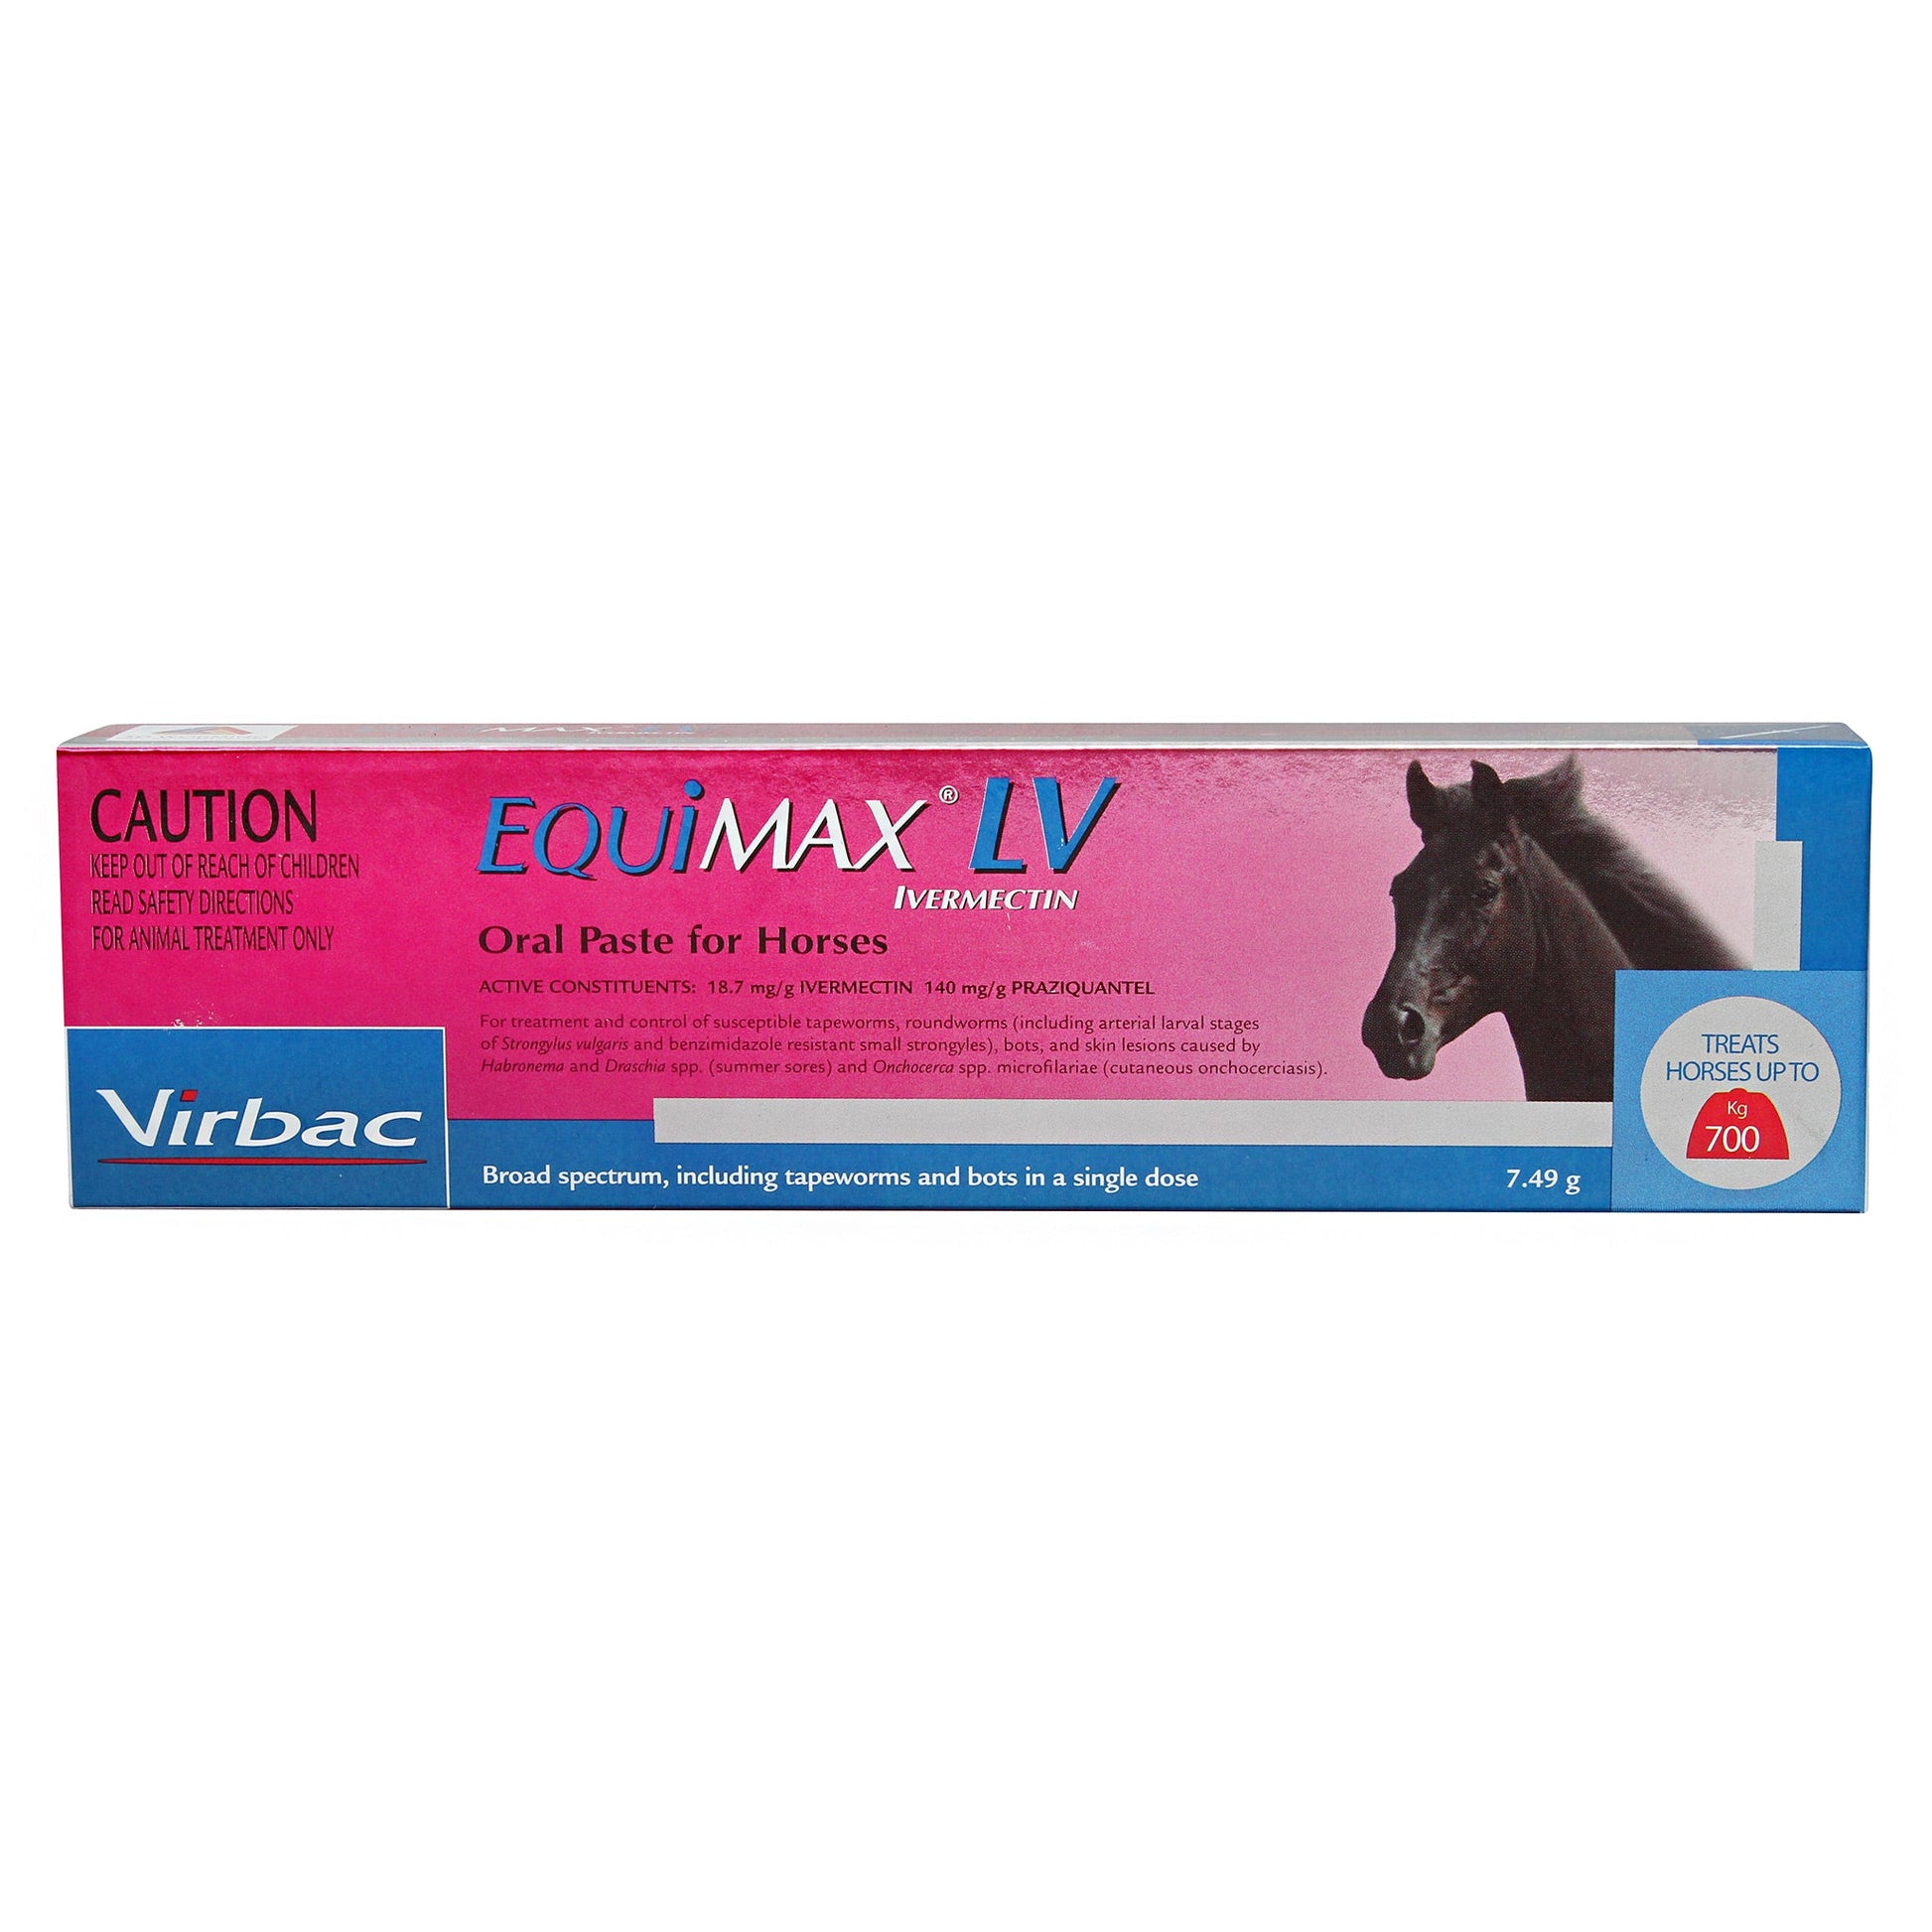 Virbac-EquiMax-LV-Horse-Wormers.jpg